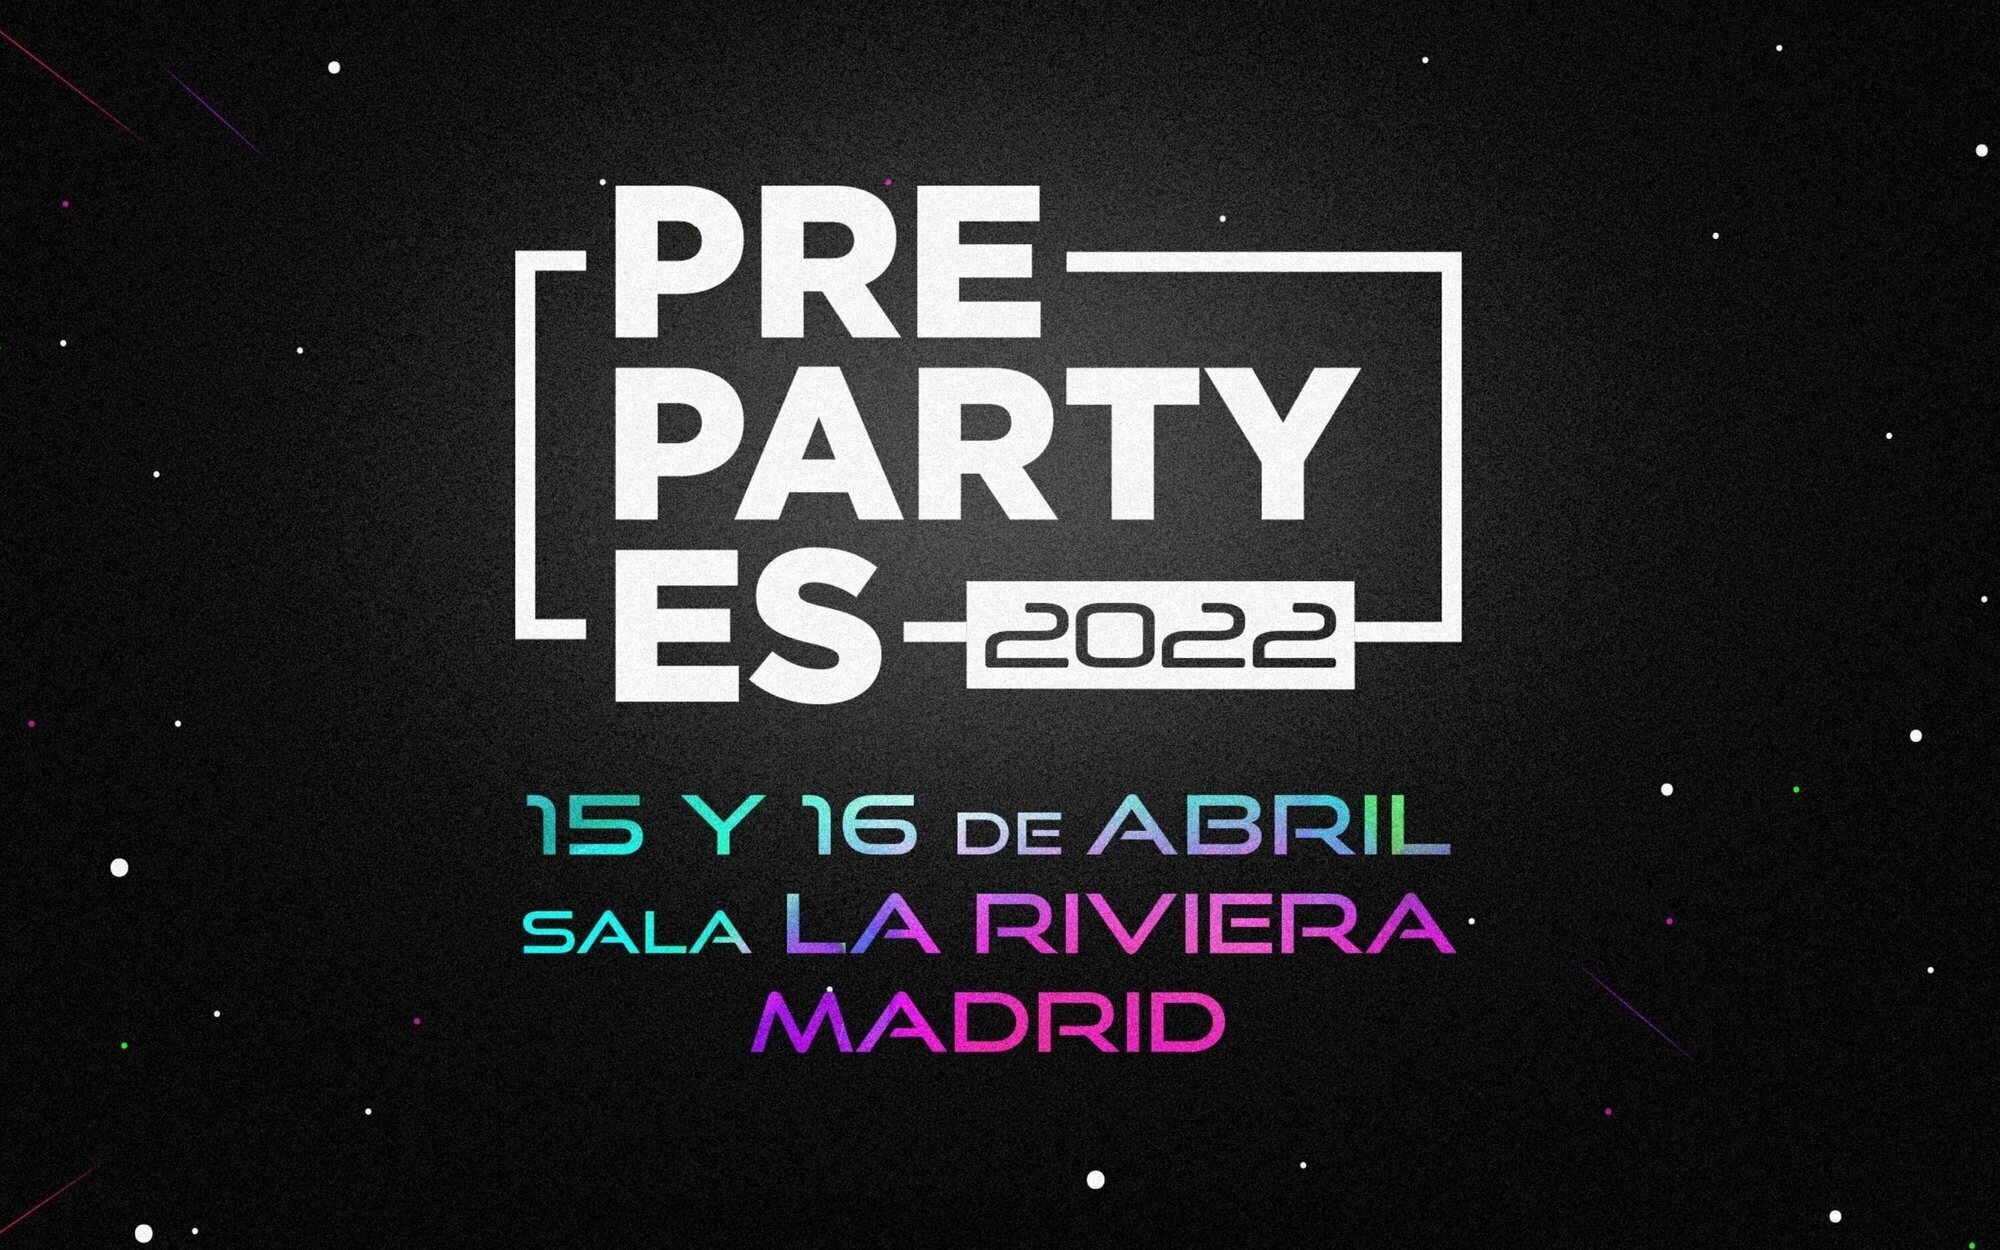 La PrePartyEs de Eurovisión 2022 regresa el 15 y 16 de abril con un gran concierto en Madrid